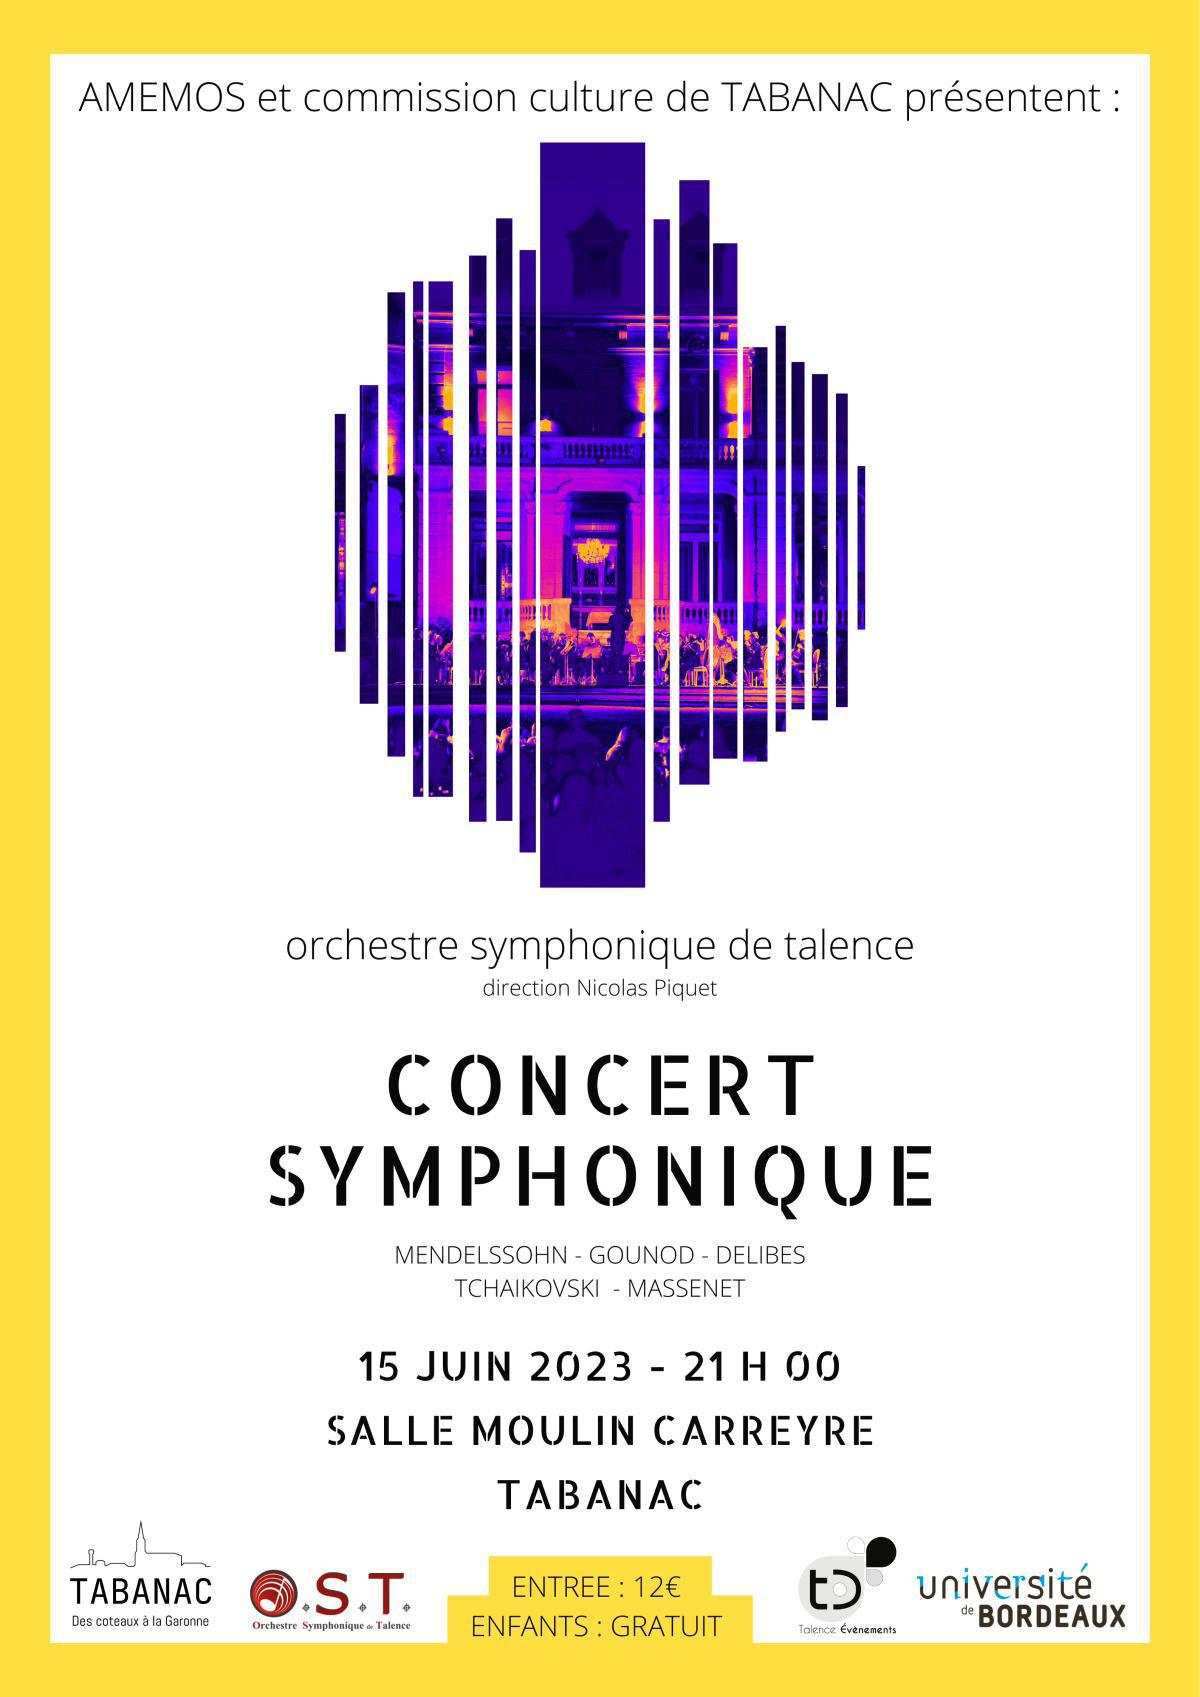 Concert symphonique àTabanac le 15 juin